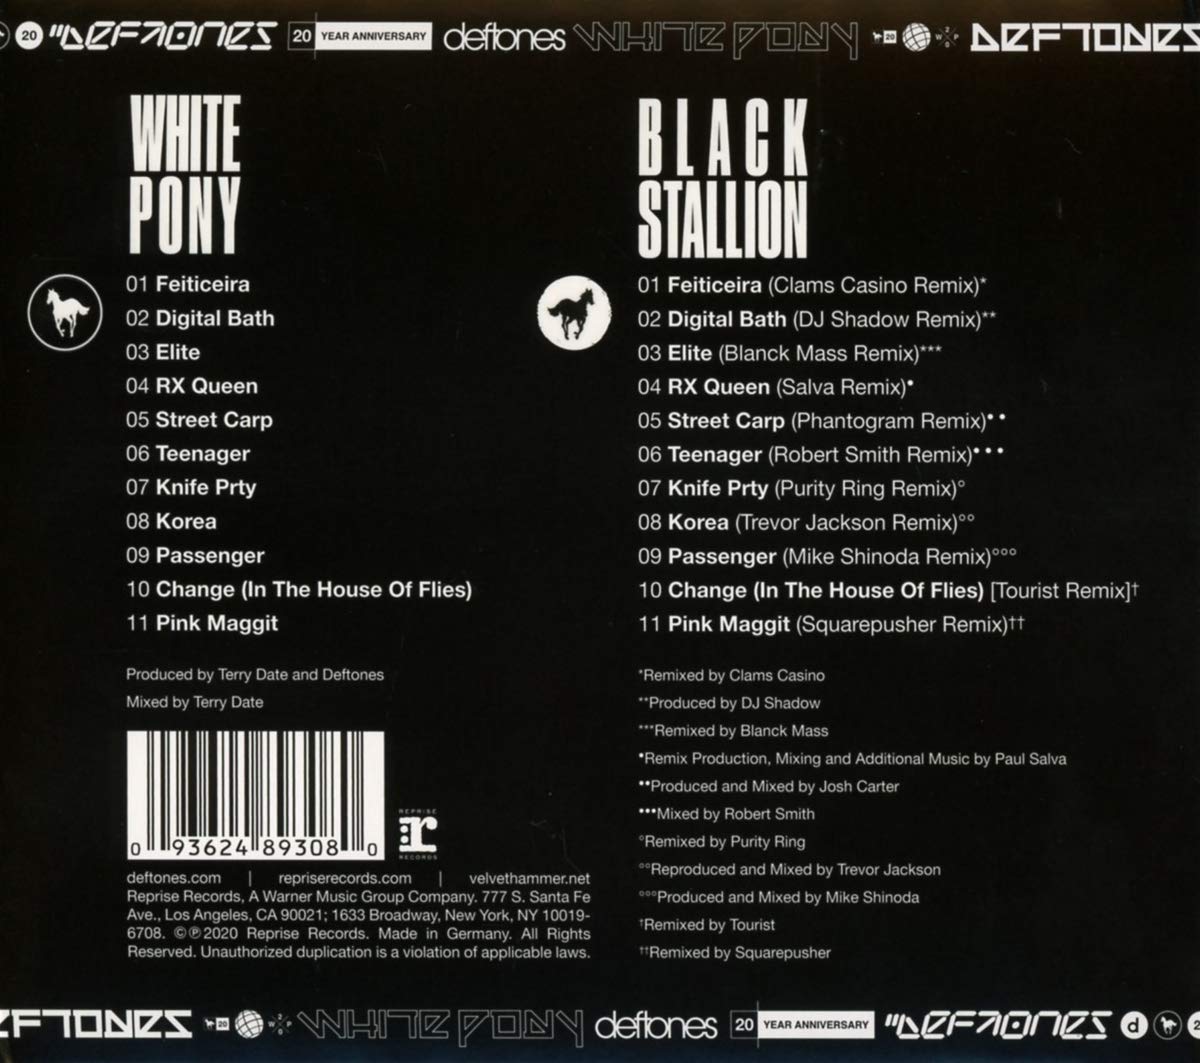 Deftones (데프톤즈) - White Pony [Deluxe Edition]